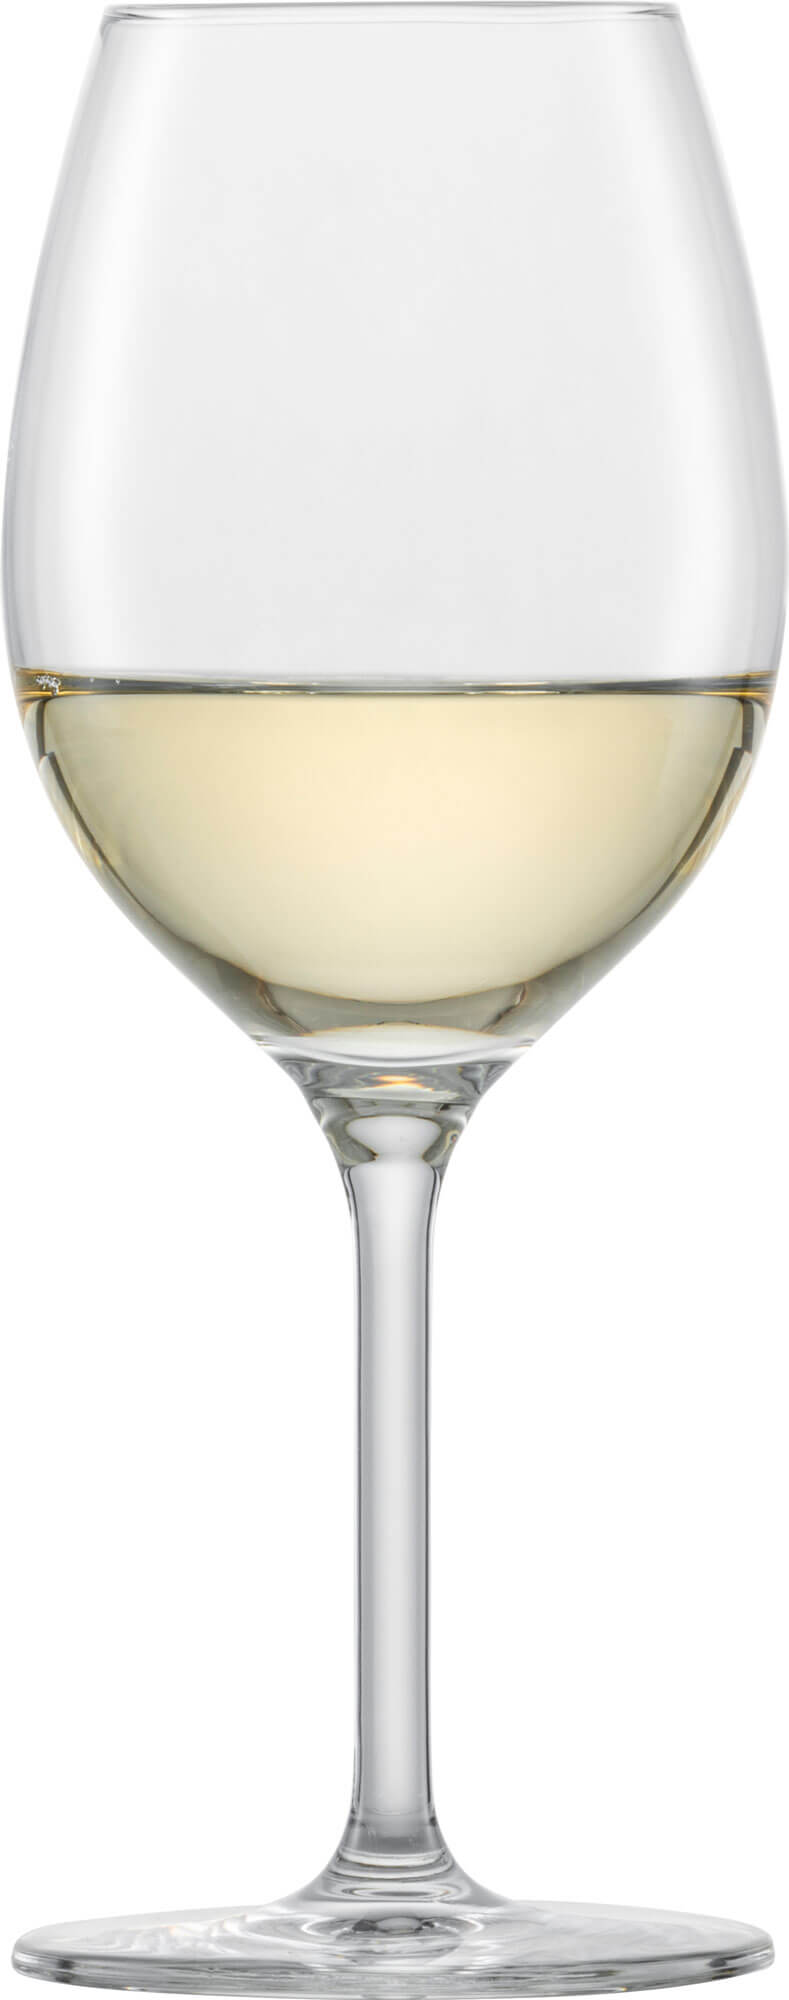 Chardonnay glass Banquet, Schott Zwiesel - 368ml (1 pc.)